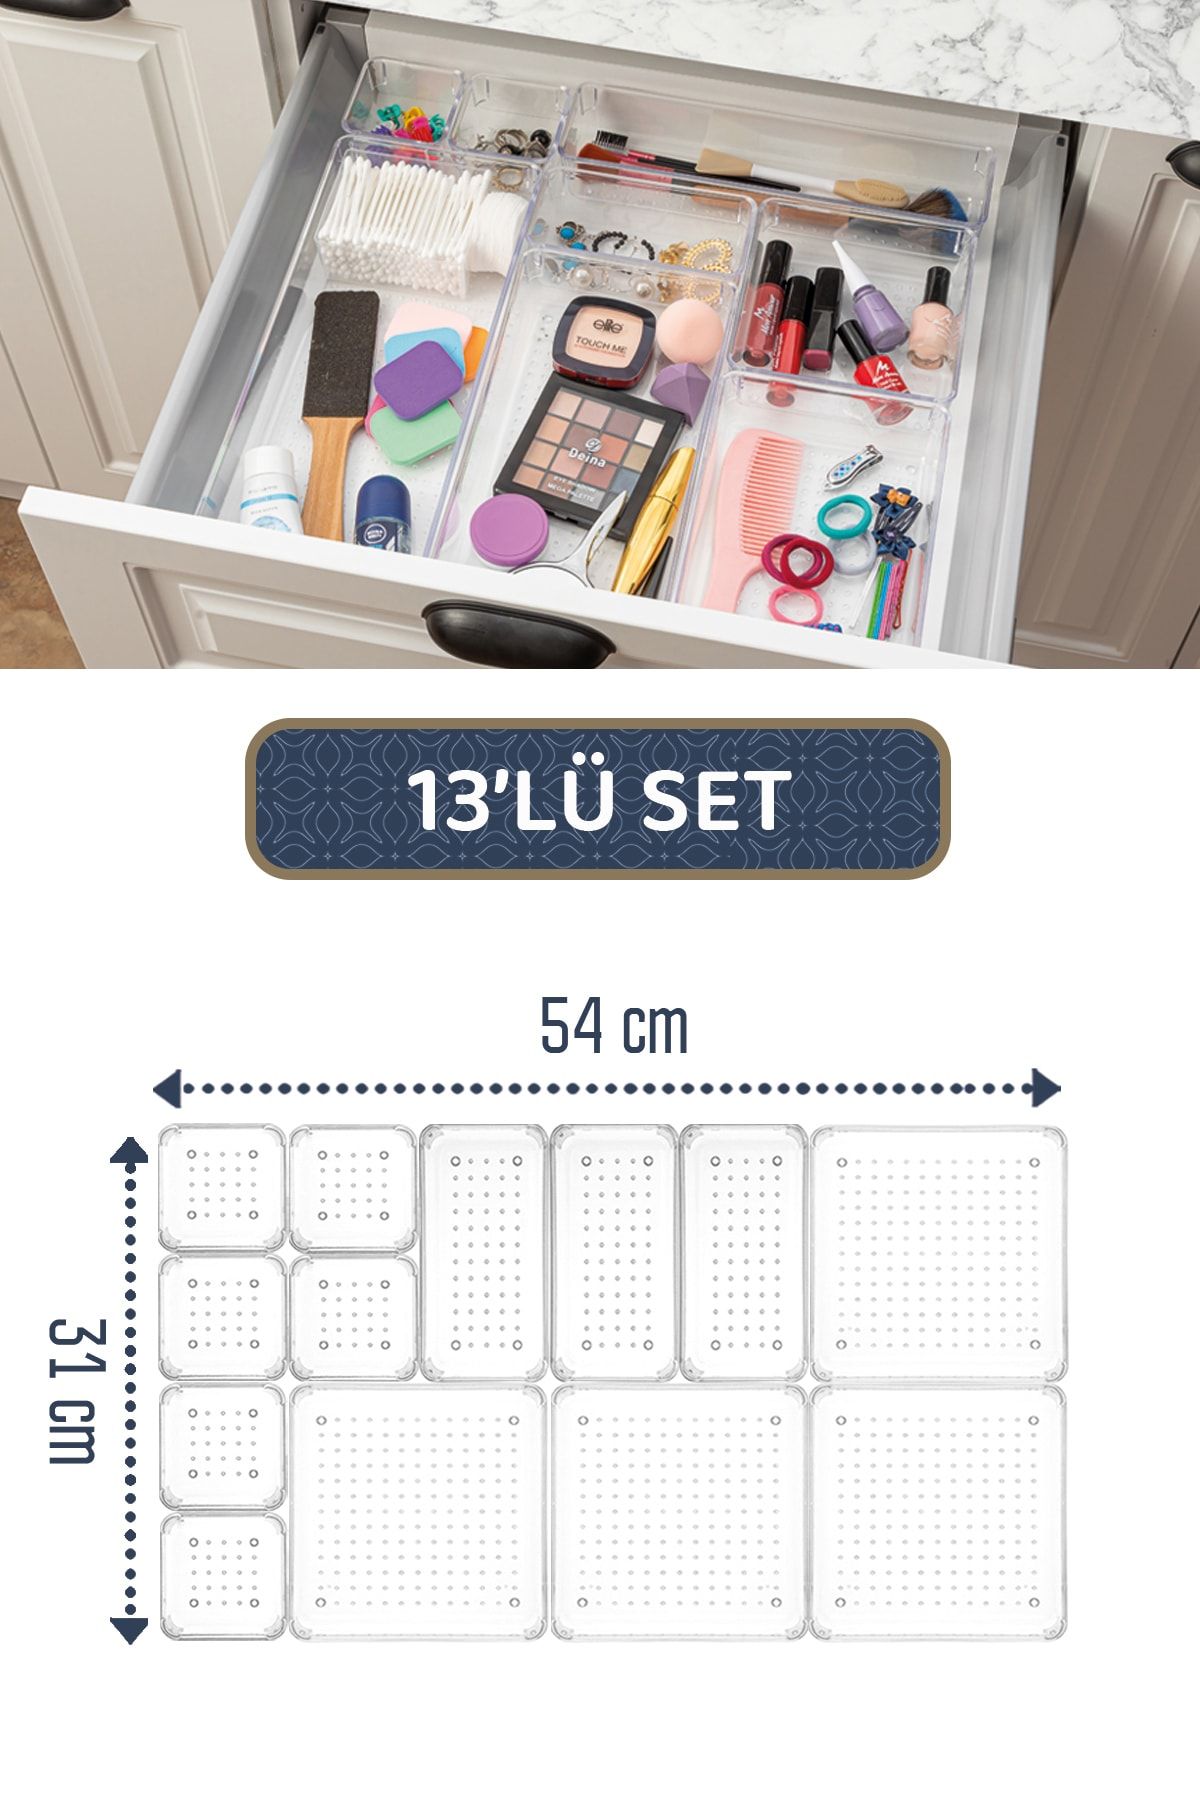 Meleni Home 13'lü Takı Kozmetik Düzenleyici - Modüler Makyaj Çekmece İçi Düzenleyici - Mutfak Banyo Organizer